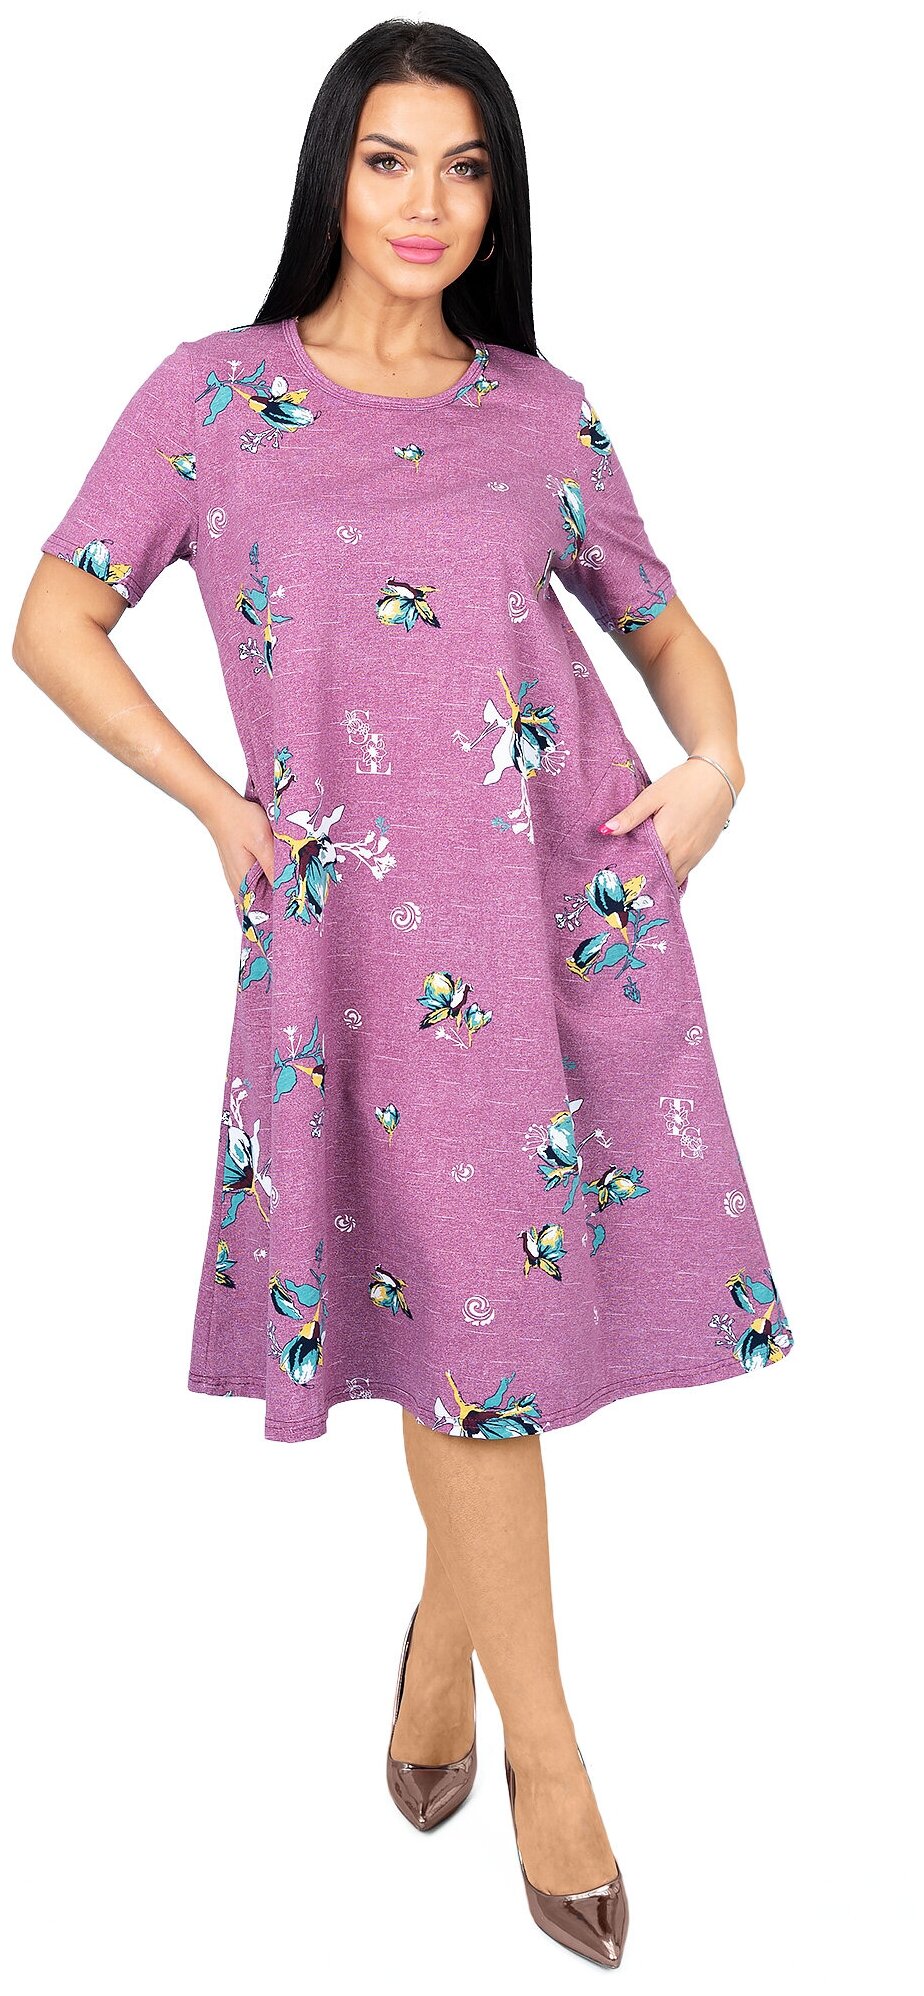 Платье Трикотажные сезоны, хлопок, повседневное, прямой силуэт, макси, размер 52, фиолетовый — купить в интернет-магазине по низкой цене на Яндекс Маркете